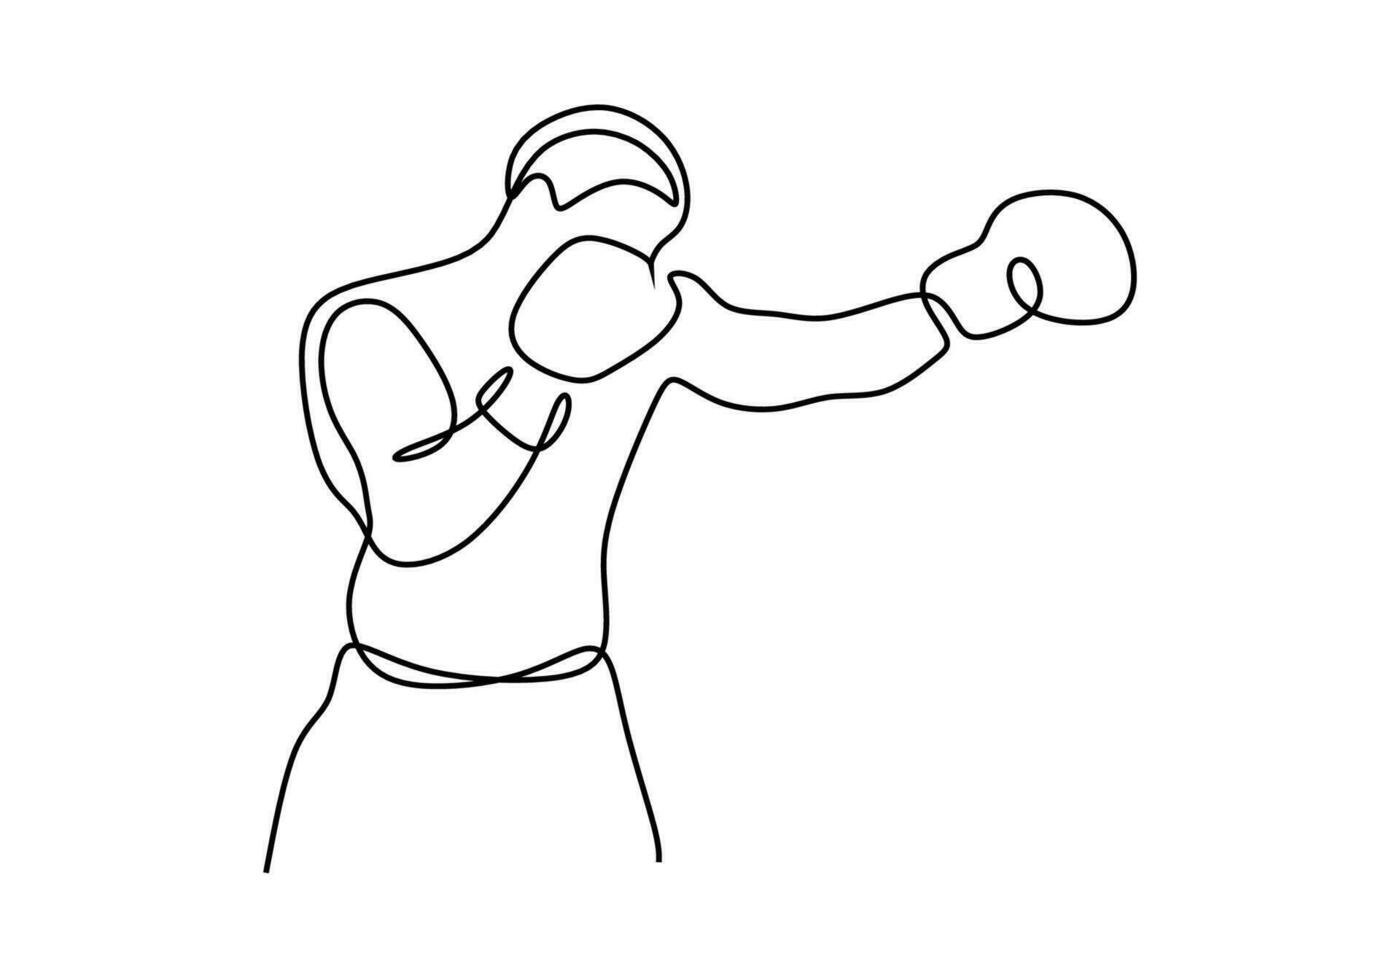 Boxer uno línea dibujo, puñetazo actitud continuo mano dibujado bosquejo Arte. vector